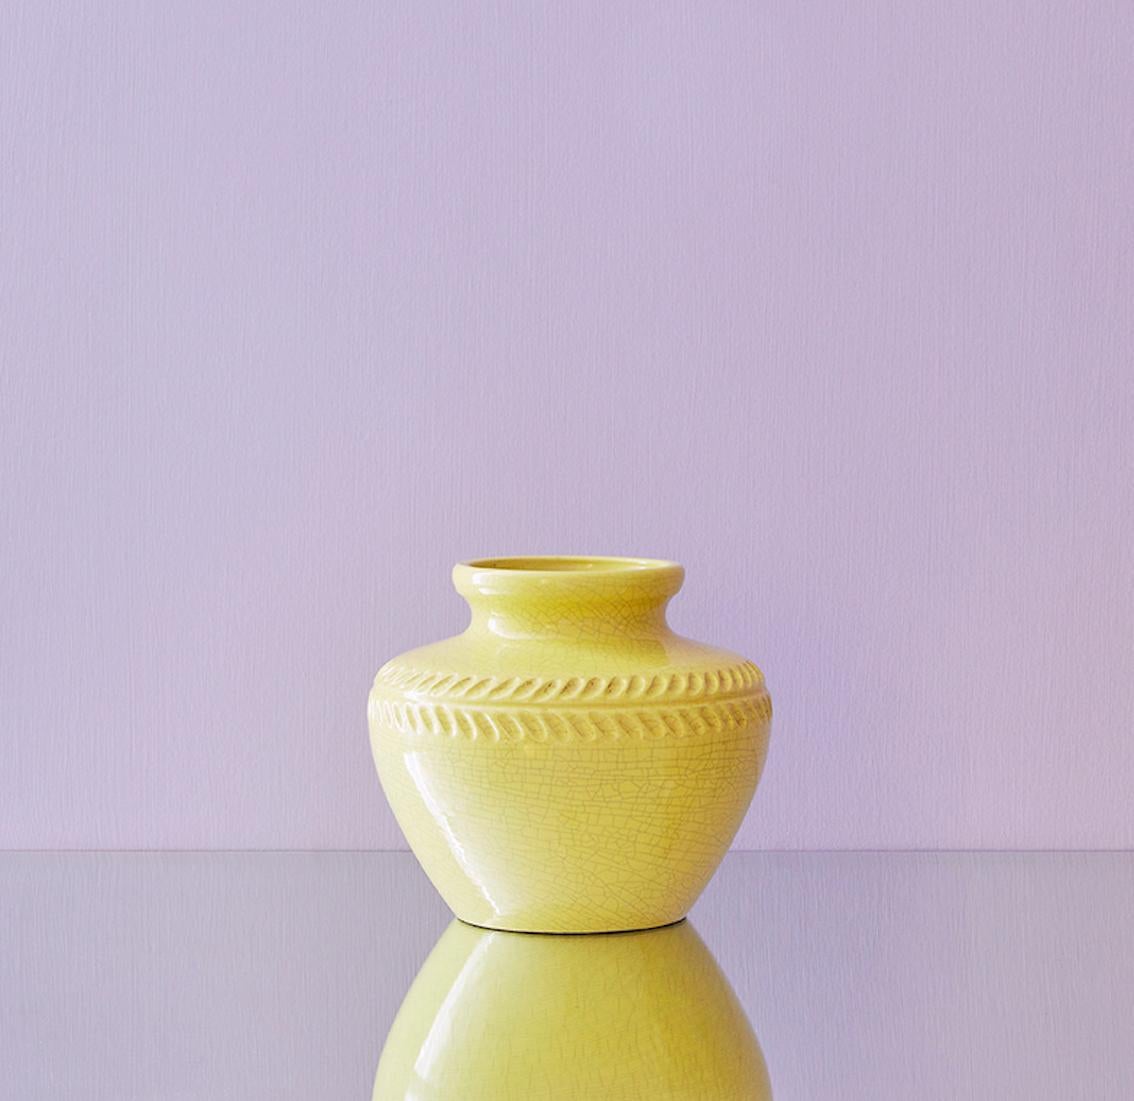 Pol Chambost
France, vintage

Yellow ceramic vase with craquelé glaze.

Measures: H 18 x Ø 21 cm.